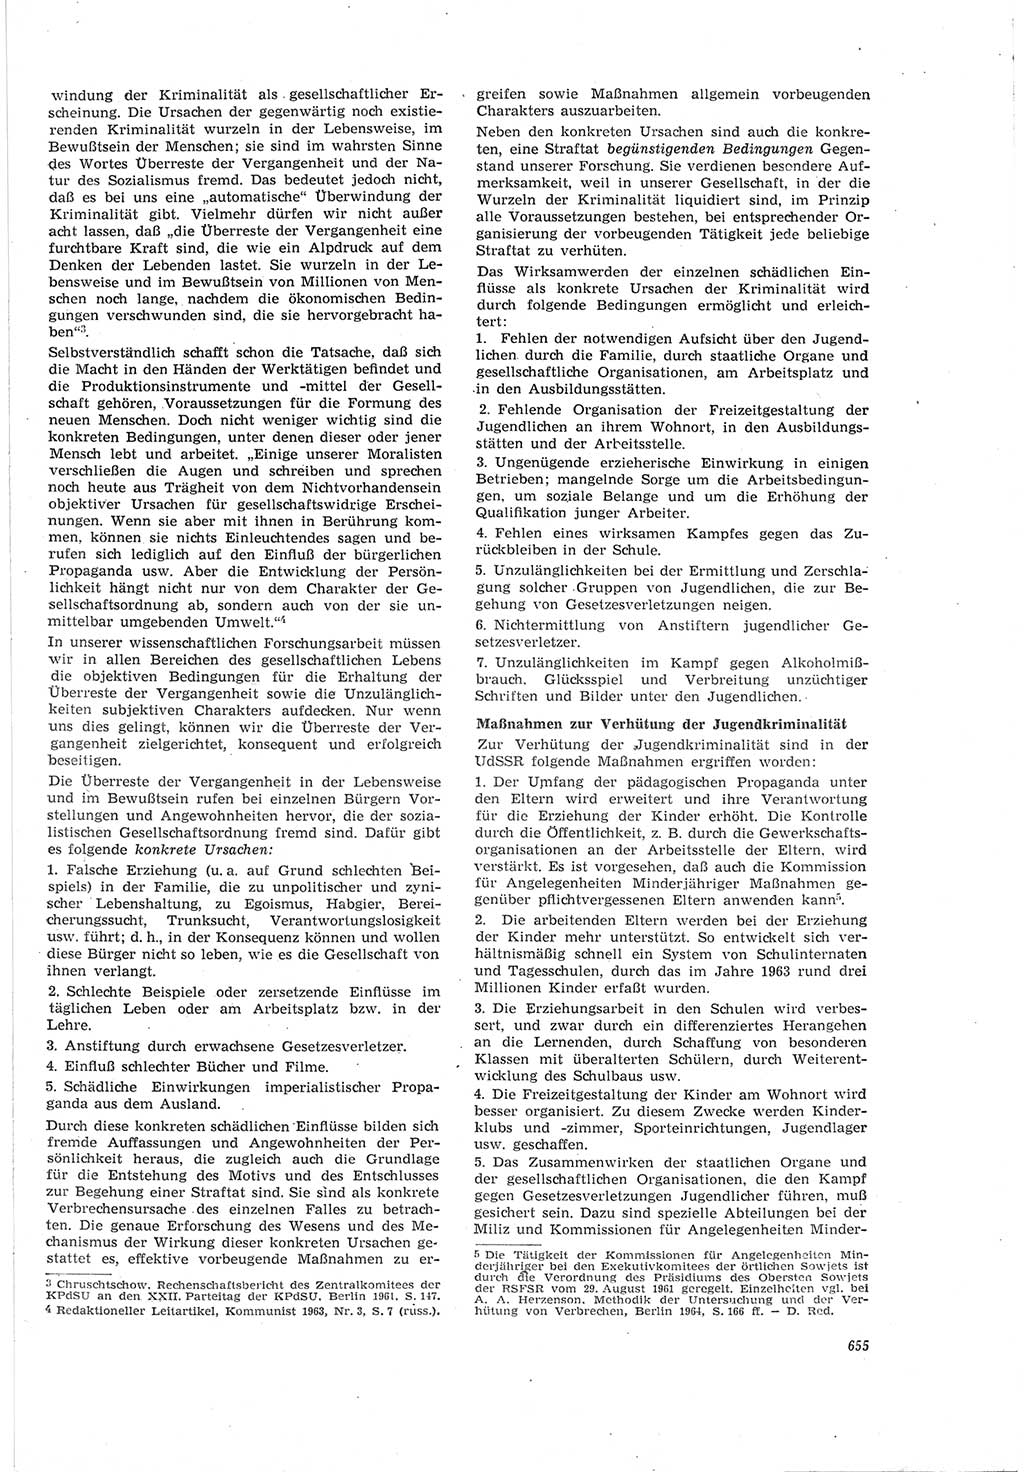 Neue Justiz (NJ), Zeitschrift für Recht und Rechtswissenschaft [Deutsche Demokratische Republik (DDR)], 18. Jahrgang 1964, Seite 655 (NJ DDR 1964, S. 655)